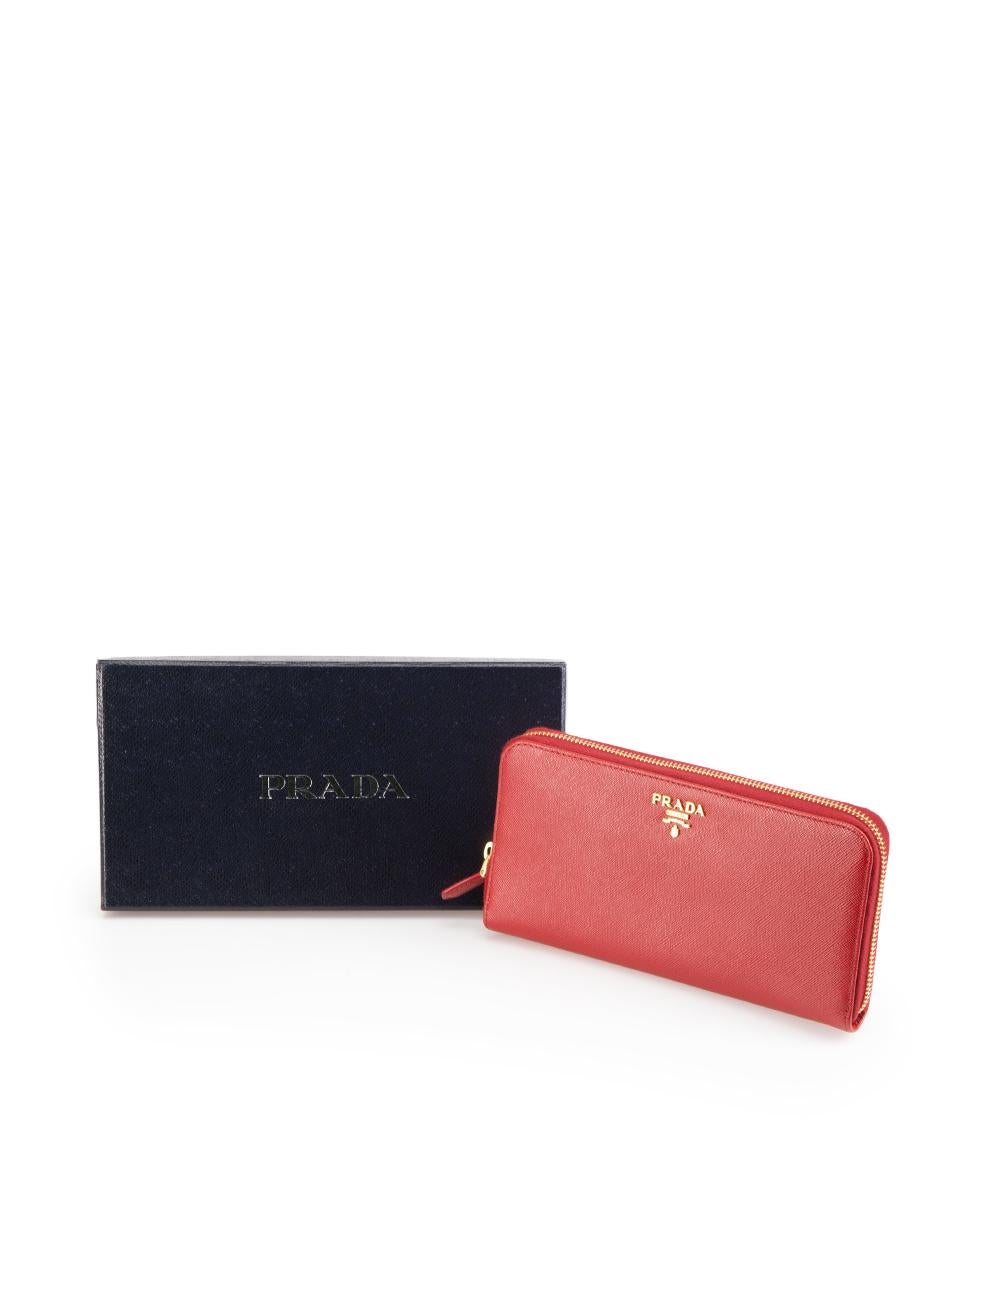 Prada Red Saffiano Leather Zip Around Wallet 2